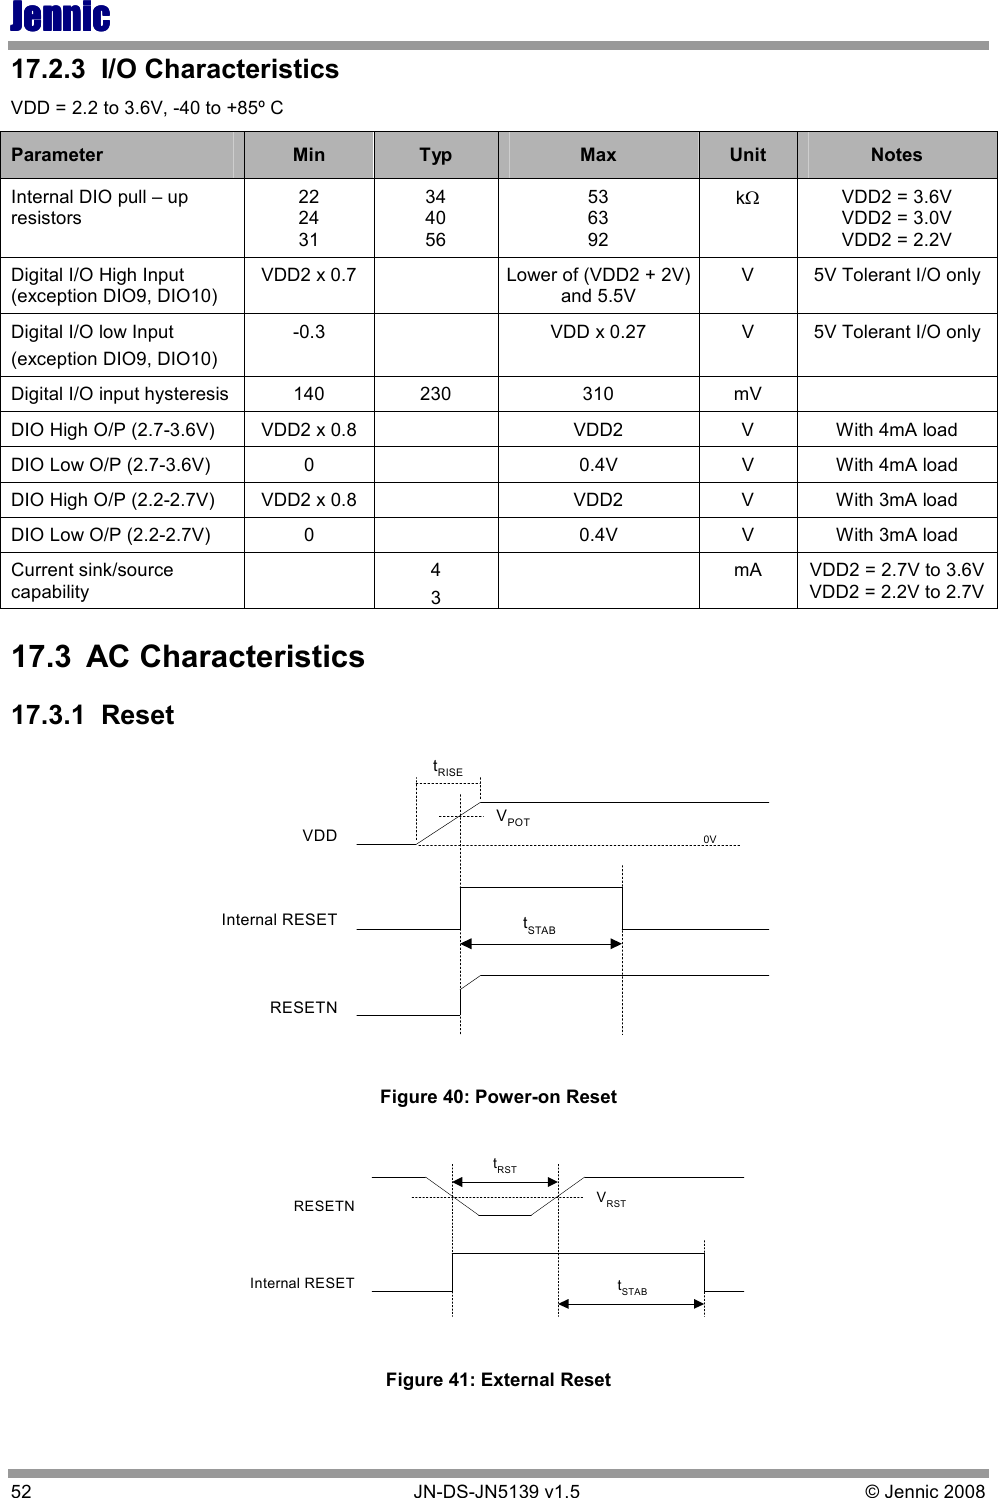 JennicJennicJennicJennic 52        JN-DS-JN5139 v1.5  © Jennic 2008  17.2.3  I/O Characteristics VDD = 2.2 to 3.6V, -40 to +85º C Parameter  Min  Typ  Max  Unit  Notes Internal DIO pull – up resistors 22 24 31 34 40 56 53 63 92 kΩ VDD2 = 3.6V VDD2 = 3.0V VDD2 = 2.2V Digital I/O High Input (exception DIO9, DIO10) VDD2 x 0.7    Lower of (VDD2 + 2V) and 5.5V V  5V Tolerant I/O only   Digital I/O low Input (exception DIO9, DIO10) -0.3    VDD x 0.27  V  5V Tolerant I/O only   Digital I/O input hysteresis  140  230  310  mV   DIO High O/P (2.7-3.6V)  VDD2 x 0.8    VDD2  V  With 4mA load DIO Low O/P (2.7-3.6V)   0    0.4V  V  With 4mA load DIO High O/P (2.2-2.7V)  VDD2 x 0.8    VDD2  V  With 3mA load DIO Low O/P (2.2-2.7V)  0    0.4V  V  With 3mA load Current sink/source capability   4 3   mA  VDD2 = 2.7V to 3.6V VDD2 = 2.2V to 2.7V 17.3  AC Characteristics 17.3.1  Reset RESETNInternal RESETVDDVPOTtSTABtRISE0V Figure 40: Power-on Reset Internal RESETRESETN VRSTtSTABtRST Figure 41: External Reset 